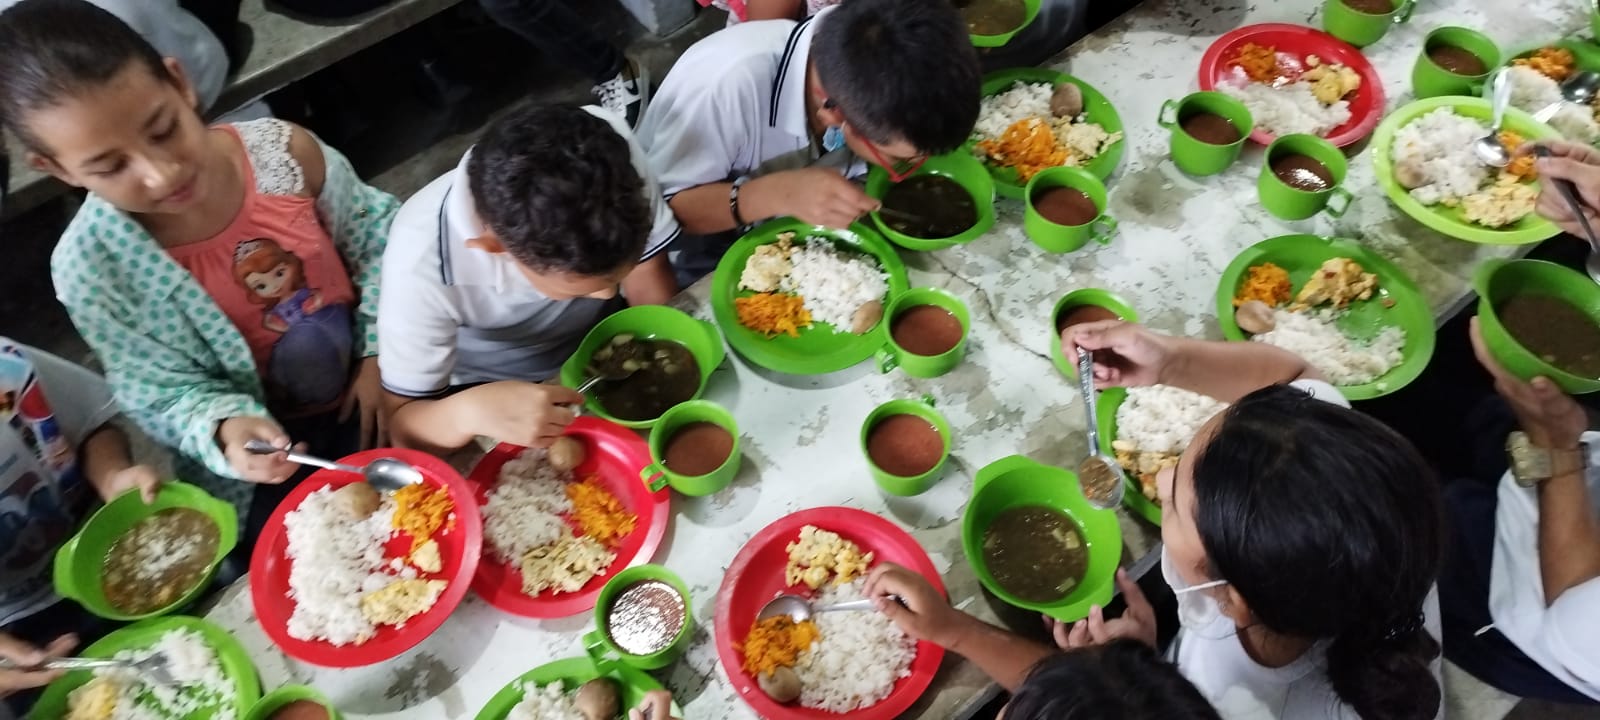 El Programa de Alimentación Escolar PAE sigue siendo otro dolor de cabeza para el Gobierno Petro. @GoberCaldas